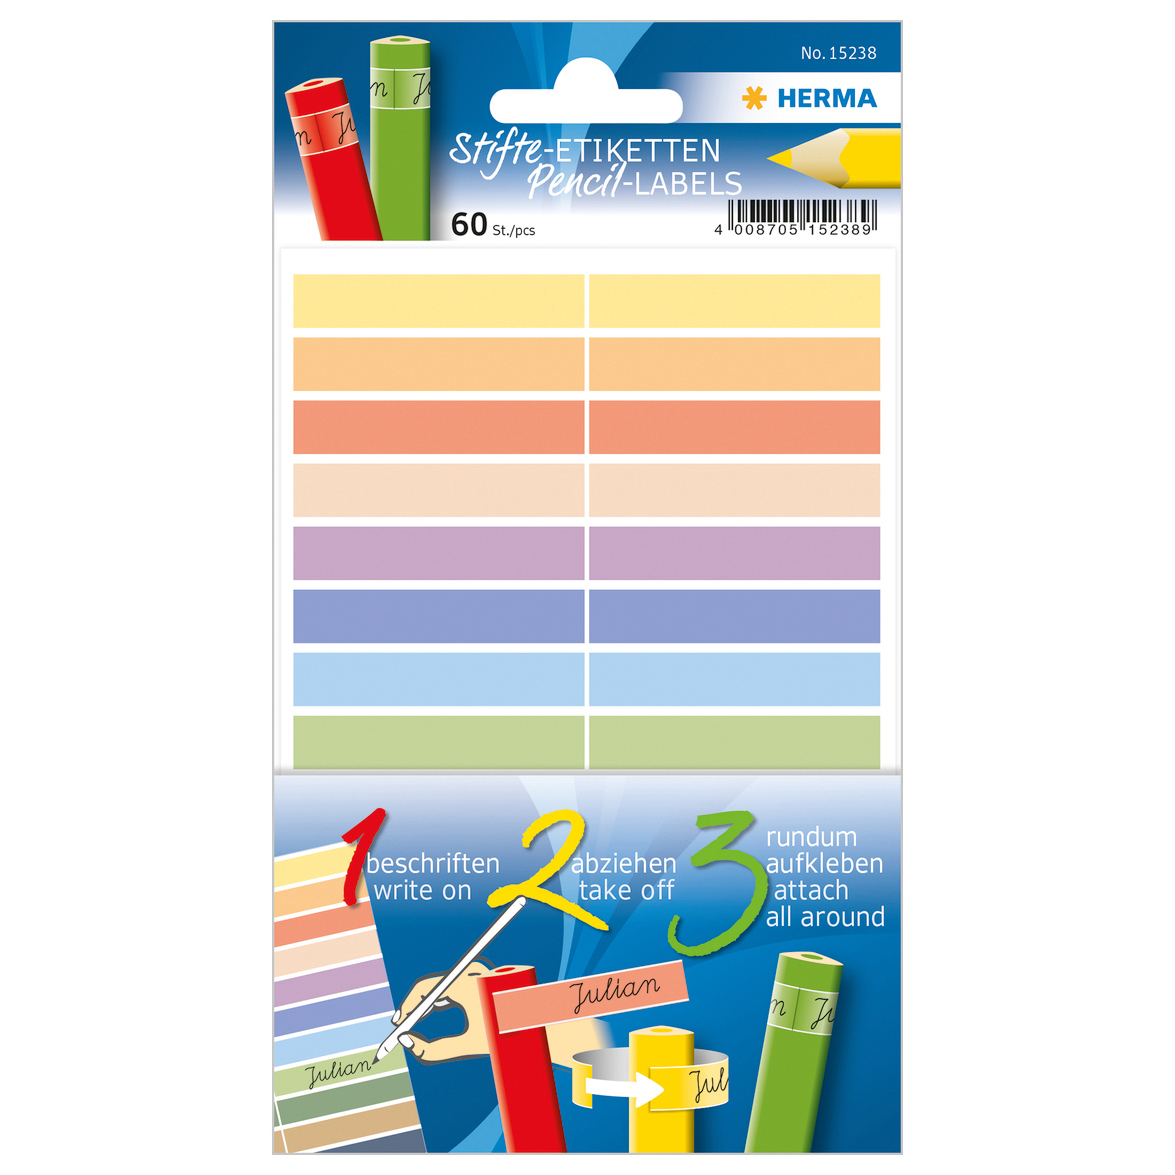 HERMA Étiquettes pour crayons 15238 10x46mm, adhésives 10x46mm, adhésives